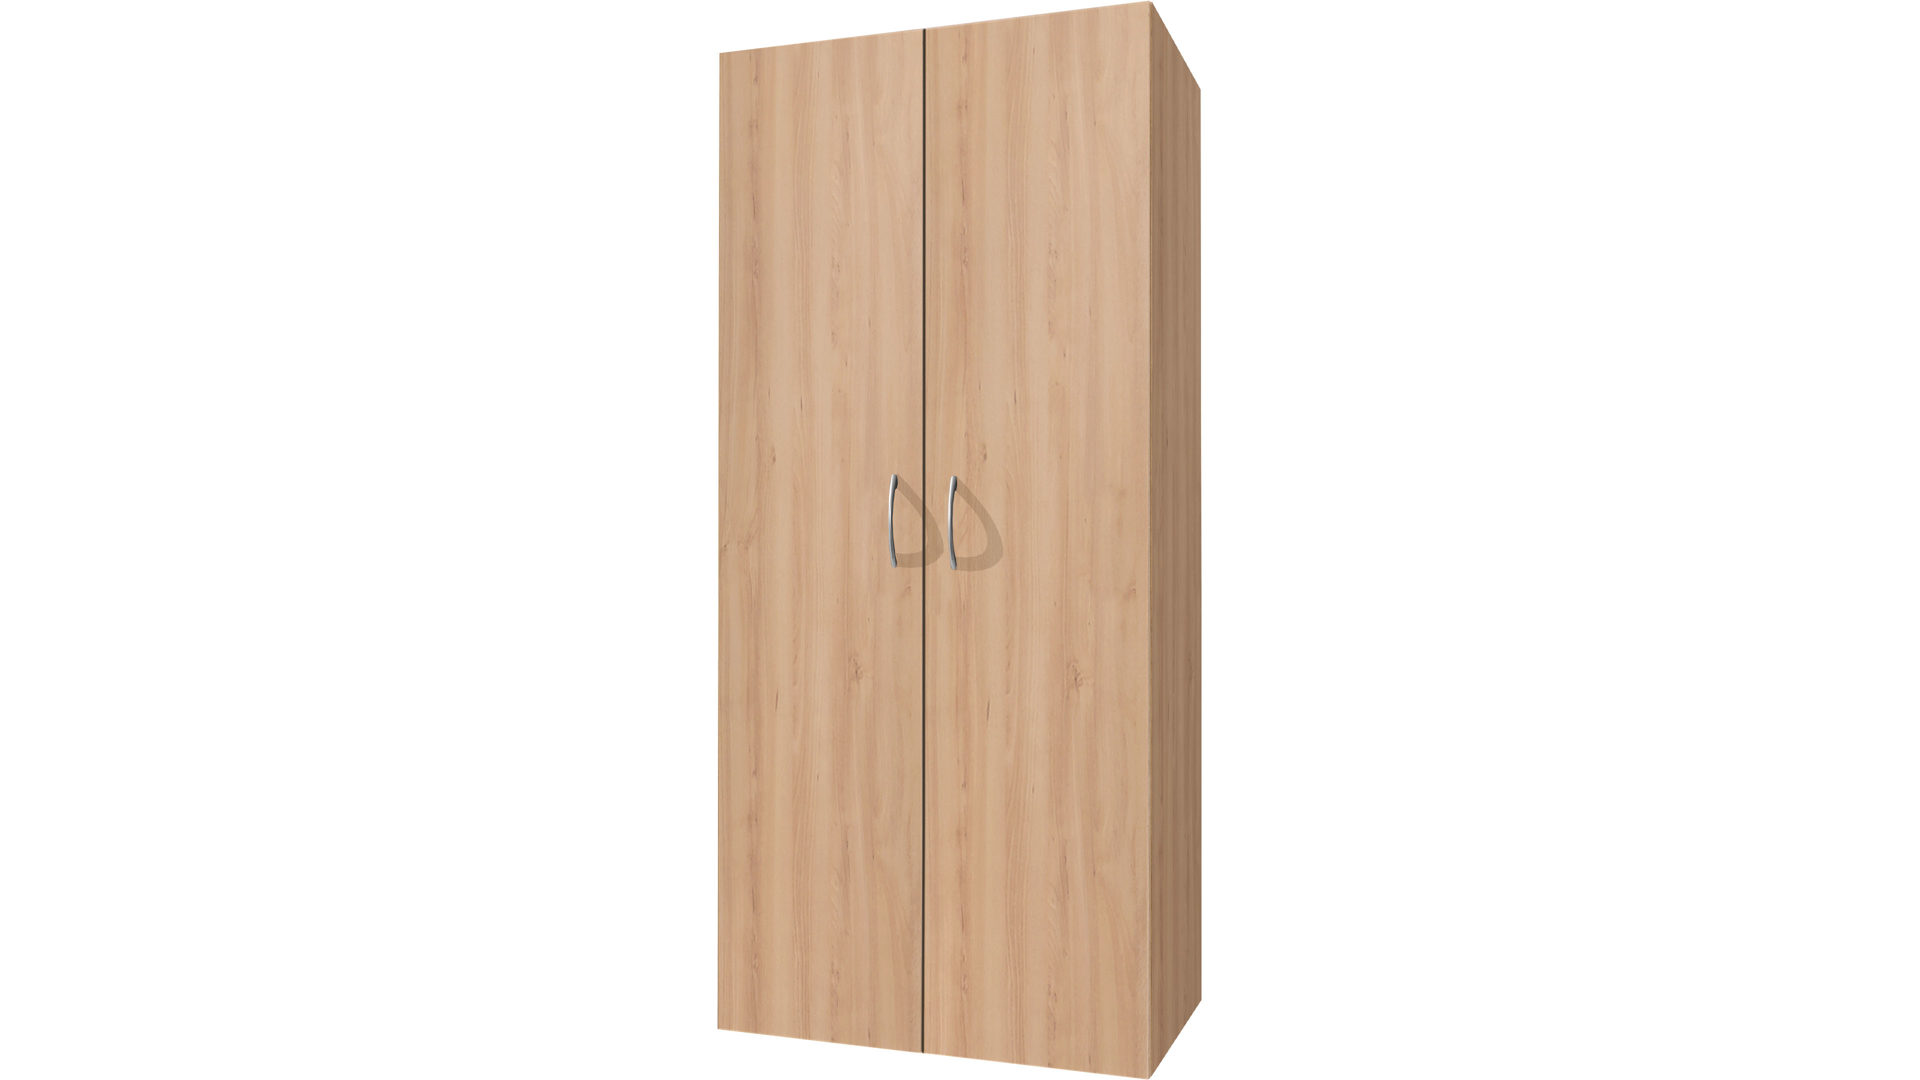 Mehrzweckschrank Wimex aus Holz in Holzfarben Mehrzweckschrank, Kleiderschrank bzw. Schlafzimmermöbel Edelbuchefarbene Kunststoffoberfläche - zwei Türen